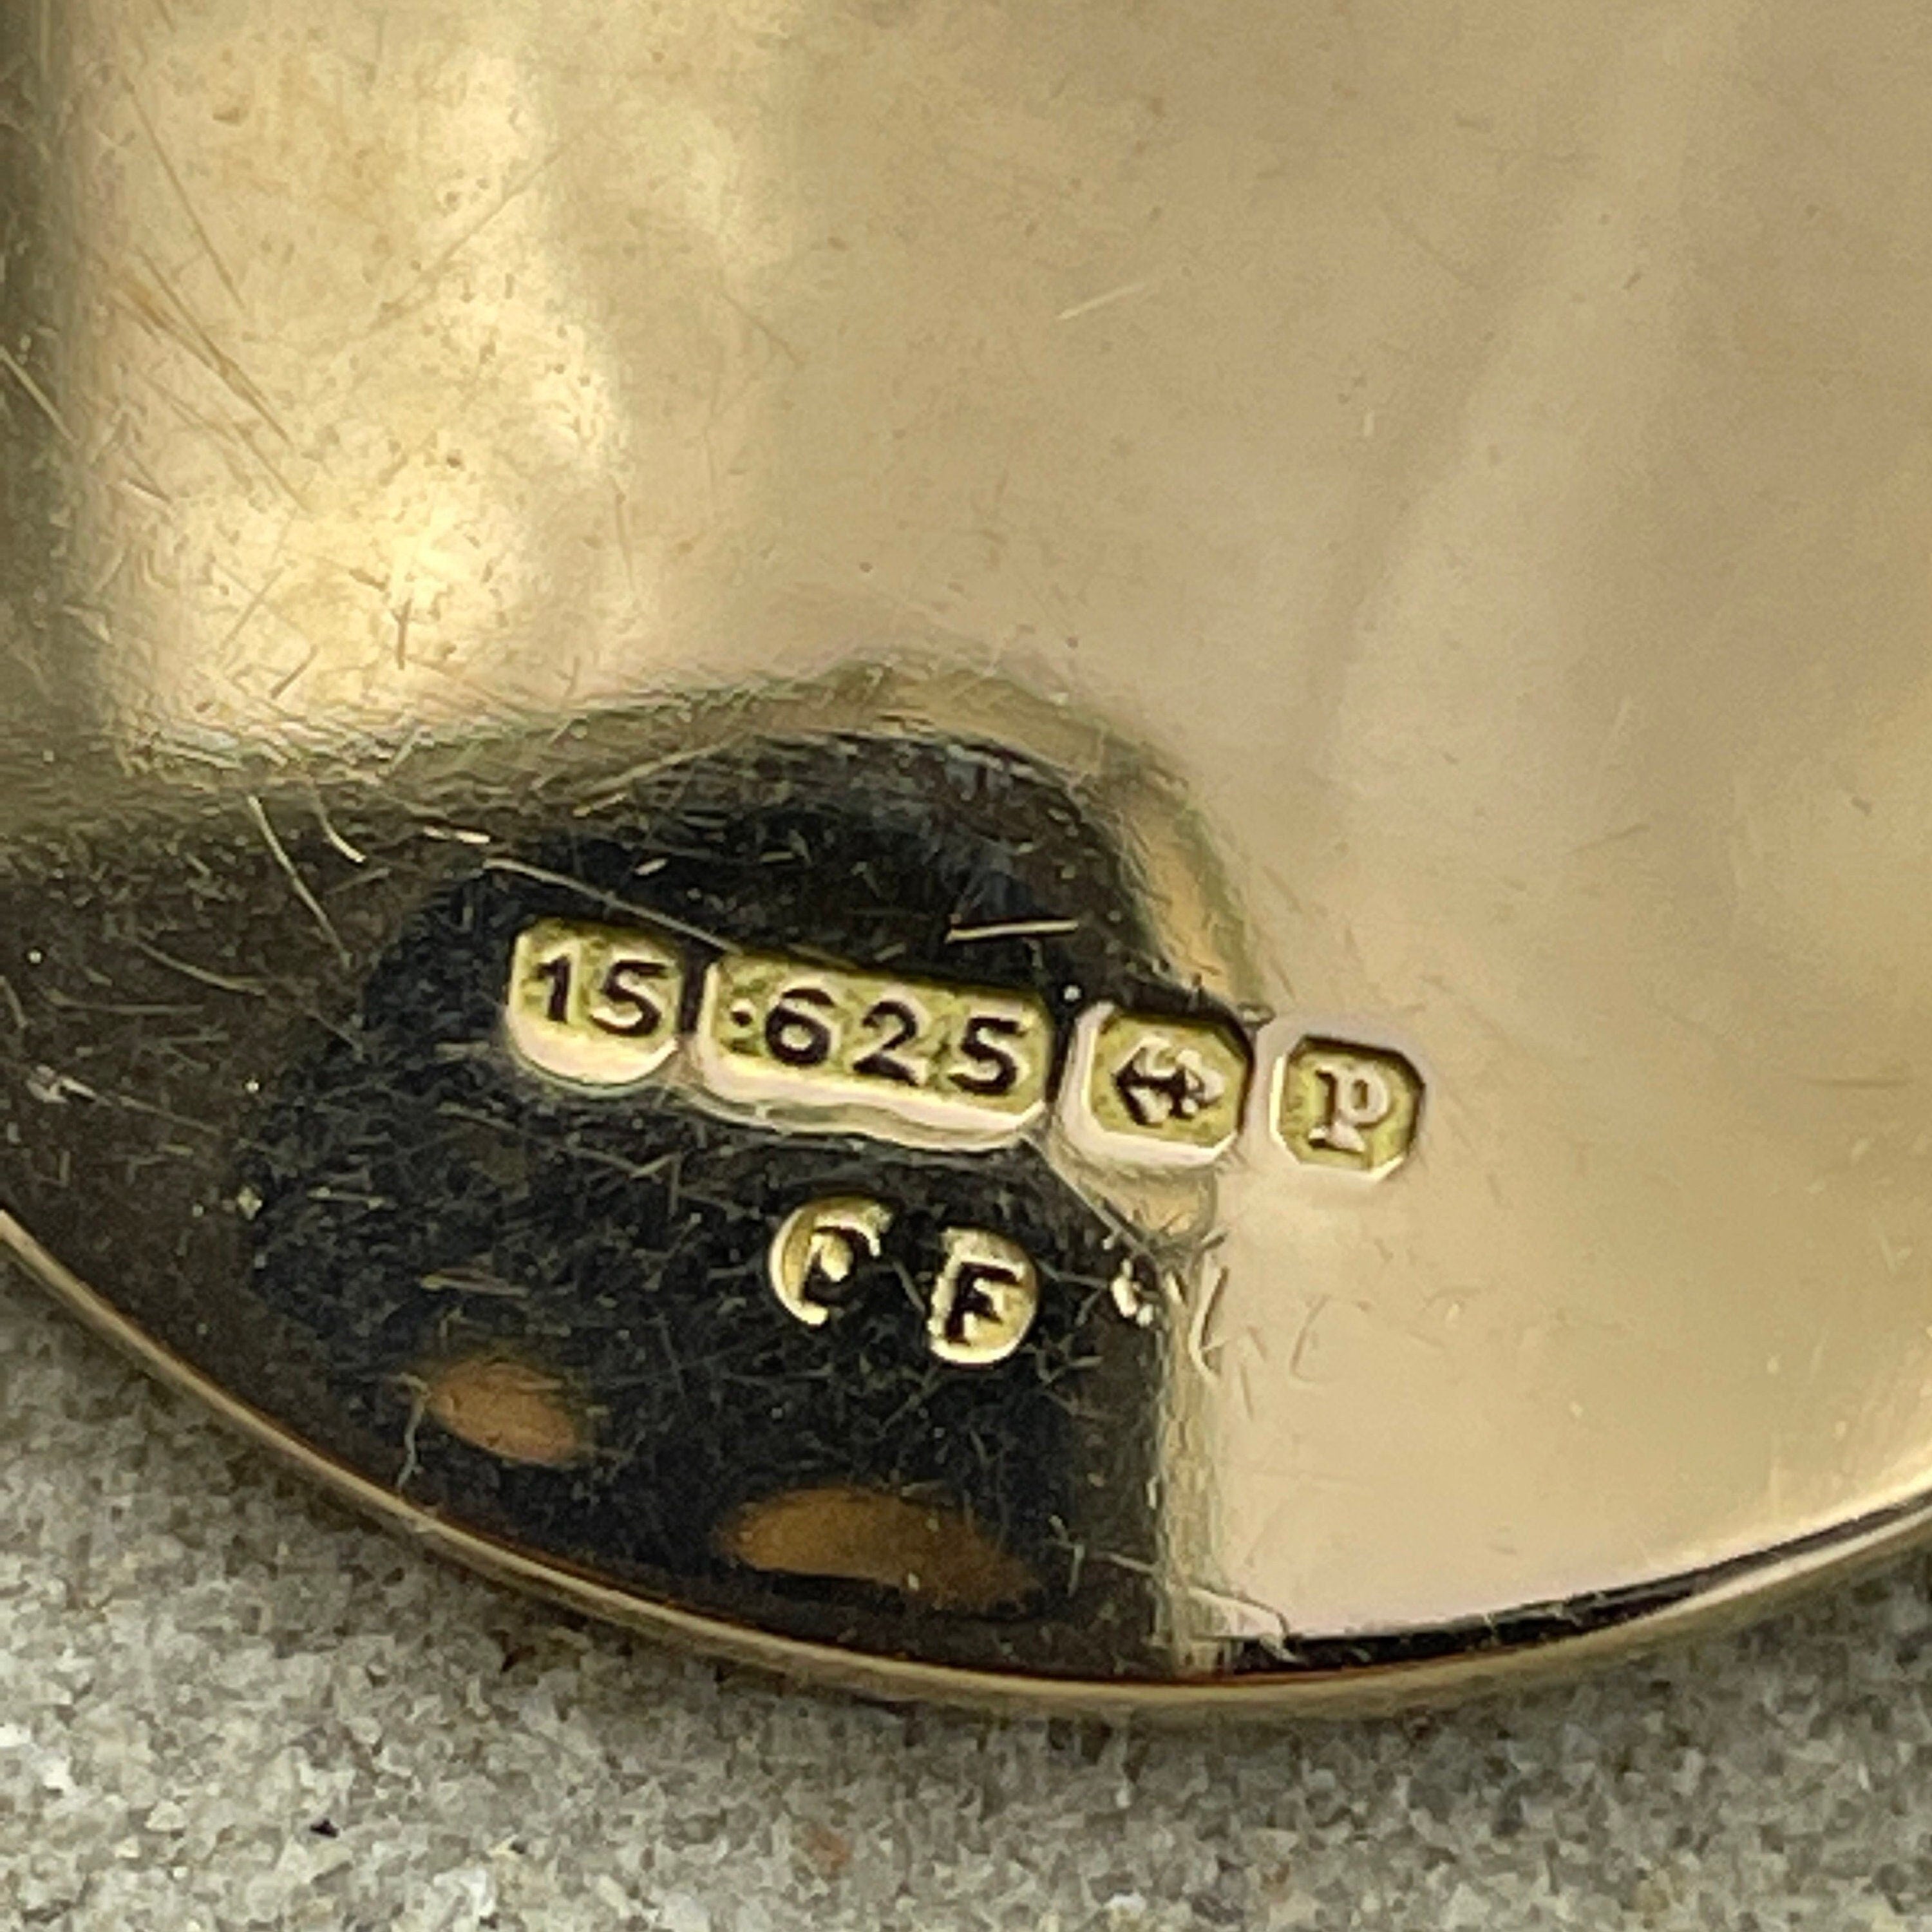 Antique 15ct gold round locket, hallmarked 1914